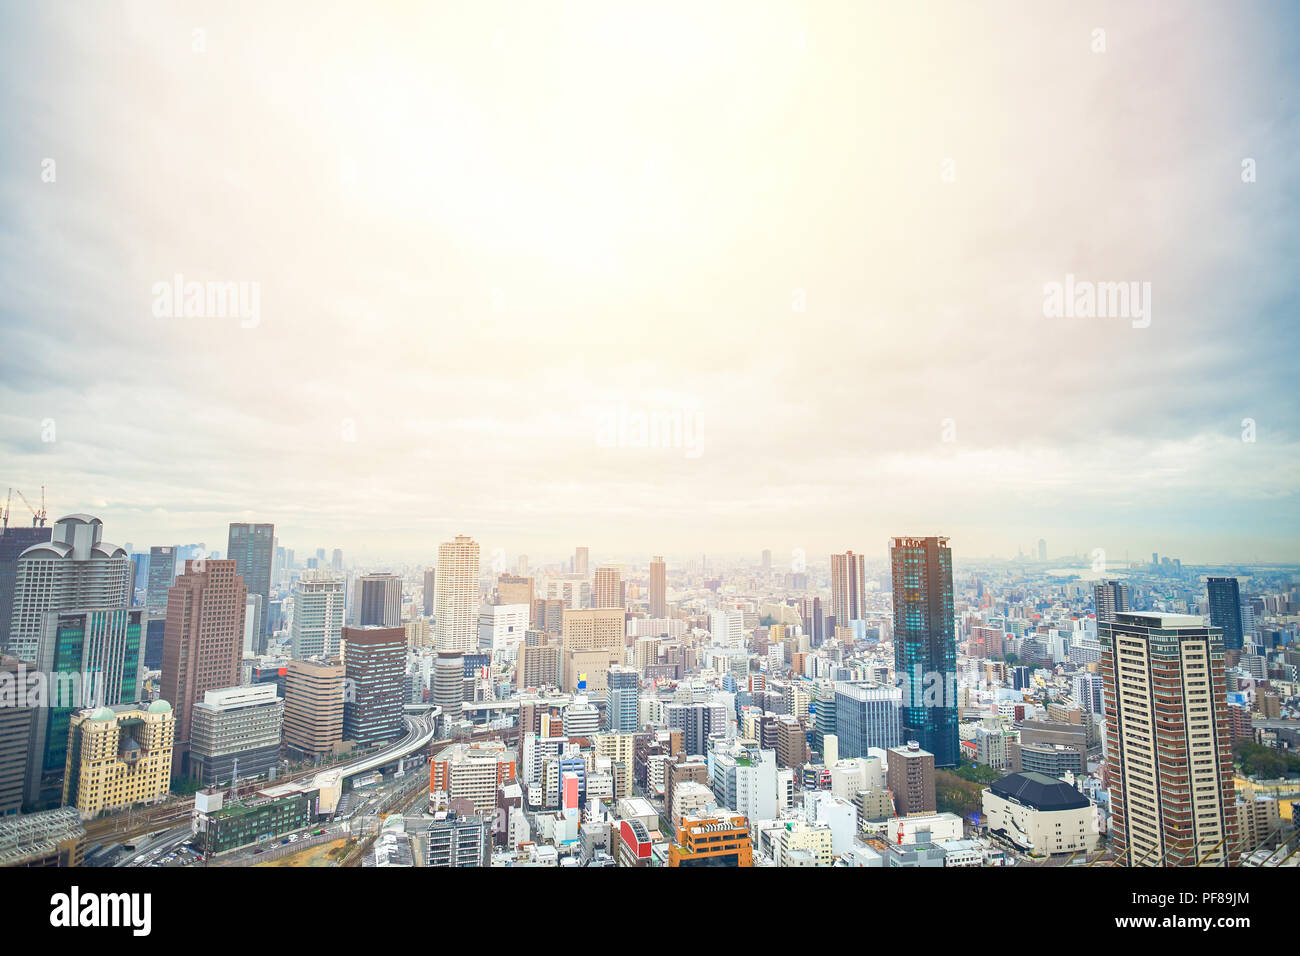 Geschäftskonzept für Immobilien- und corporate - Panoramablick auf die moderne Stadt Skyline Luftbild Vogelperspektive mit dramatischen Sonnenauf- und Morgen Himmel Stockfoto